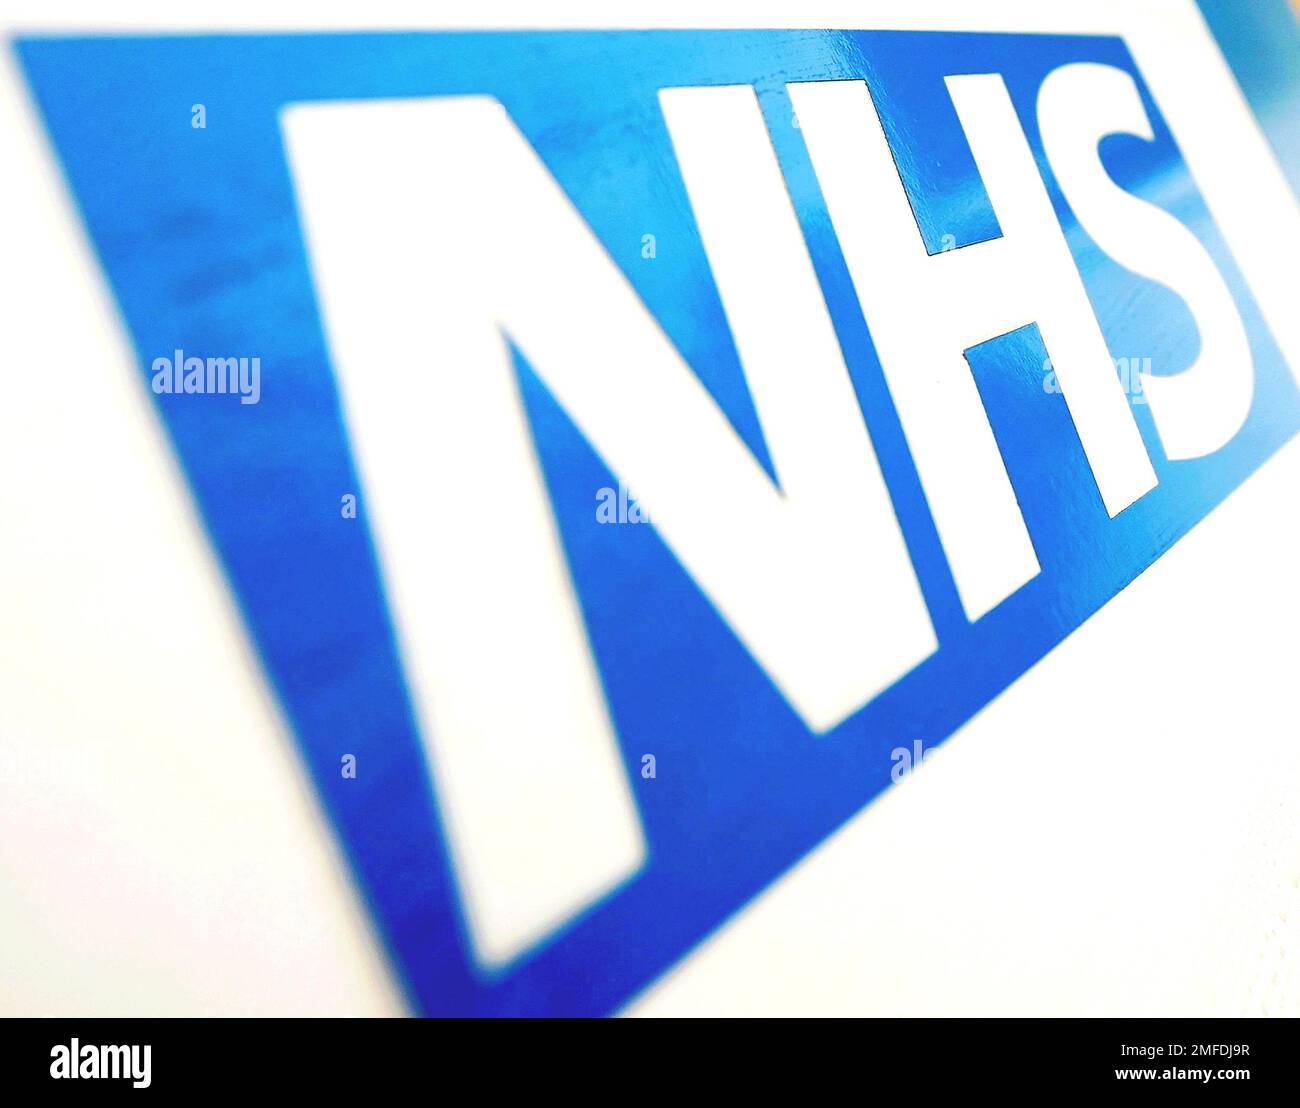 Photo du dossier datée du 06/11/10 du logo NHS. L'inquiétude du public à l'égard du NHS a atteint son plus haut niveau depuis avant la pandémie, en raison des grèves des infirmières et des ambulanciers. Banque D'Images